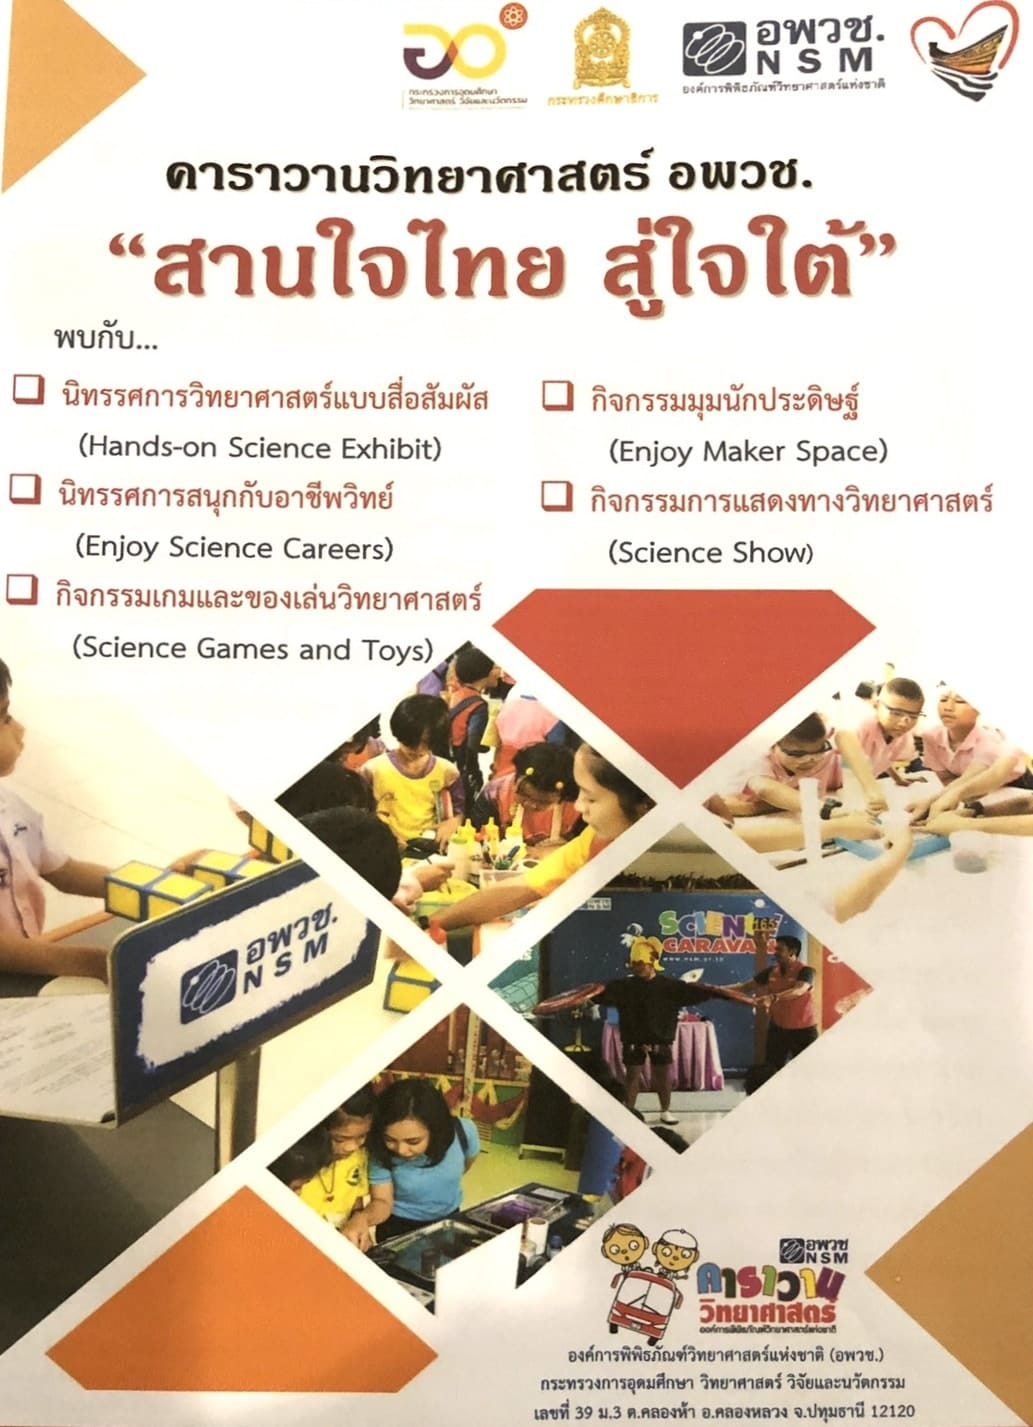 ขอเชิญร่วมงาน คาราวานวิทยาศาสตร์ อพวช. "สานใจไทย สู่ใจใต้" ในพื้นที่ภาคใต้ 